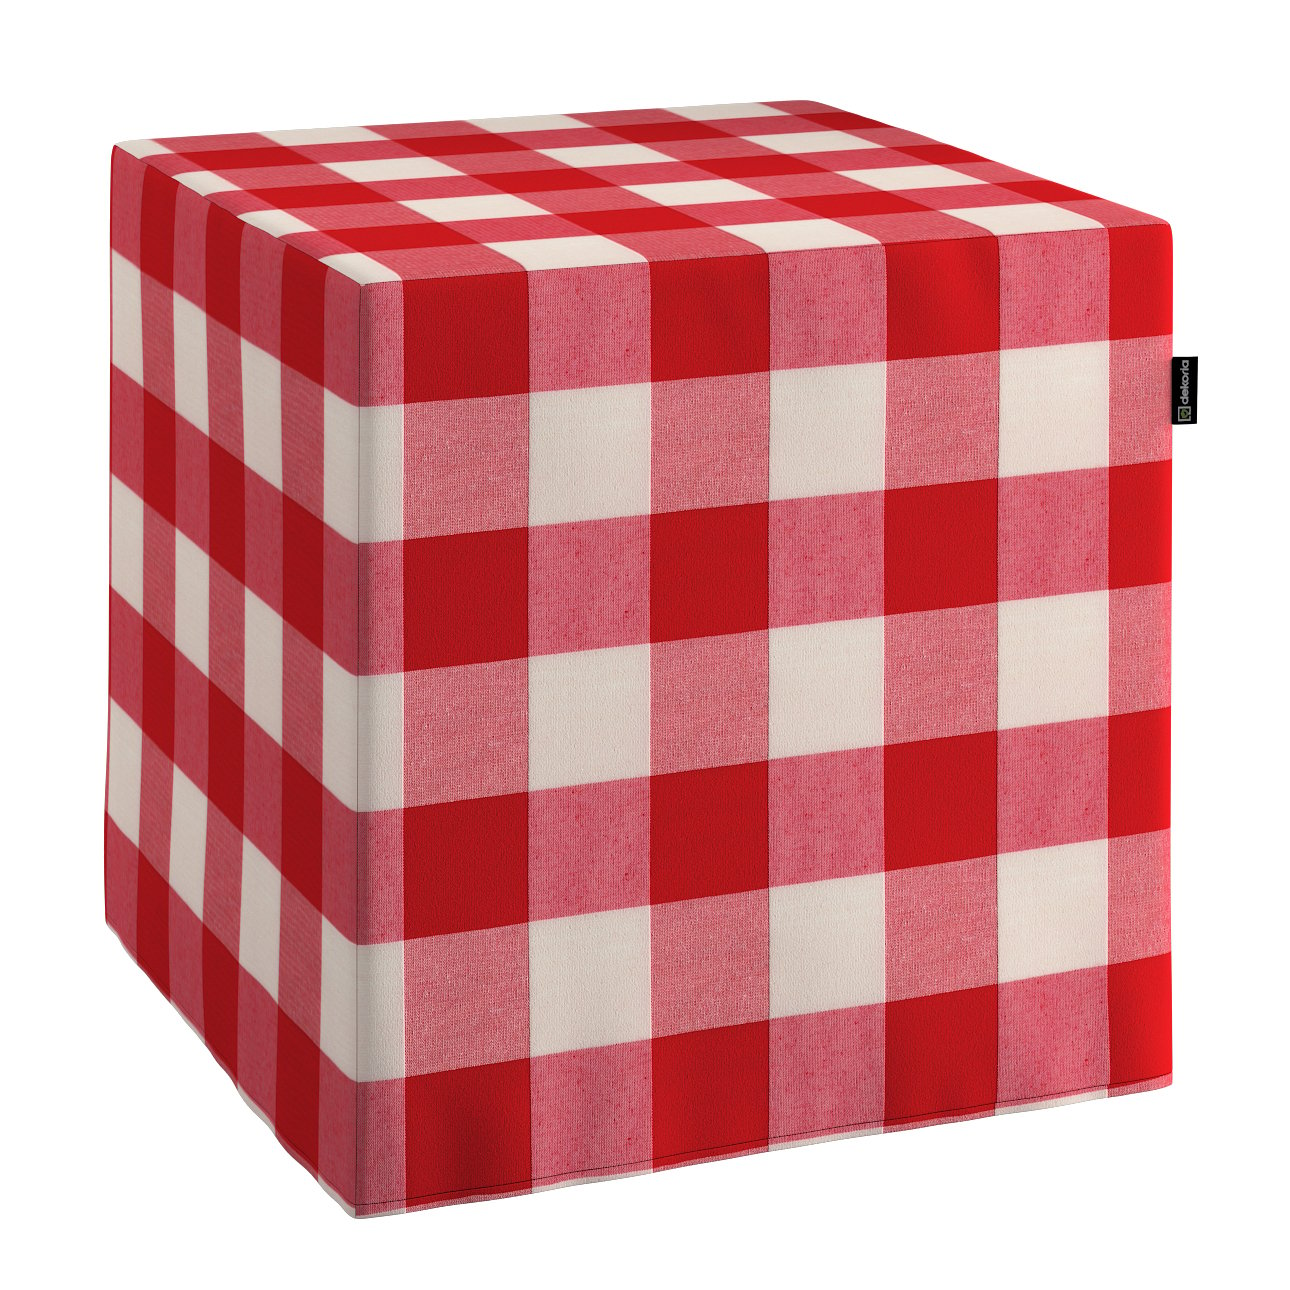 E-shop Dekoria Taburetka tvrdá, kocka, červeno-biele veľké káro, 40 x 40 x 40 cm, Quadro, 136-18